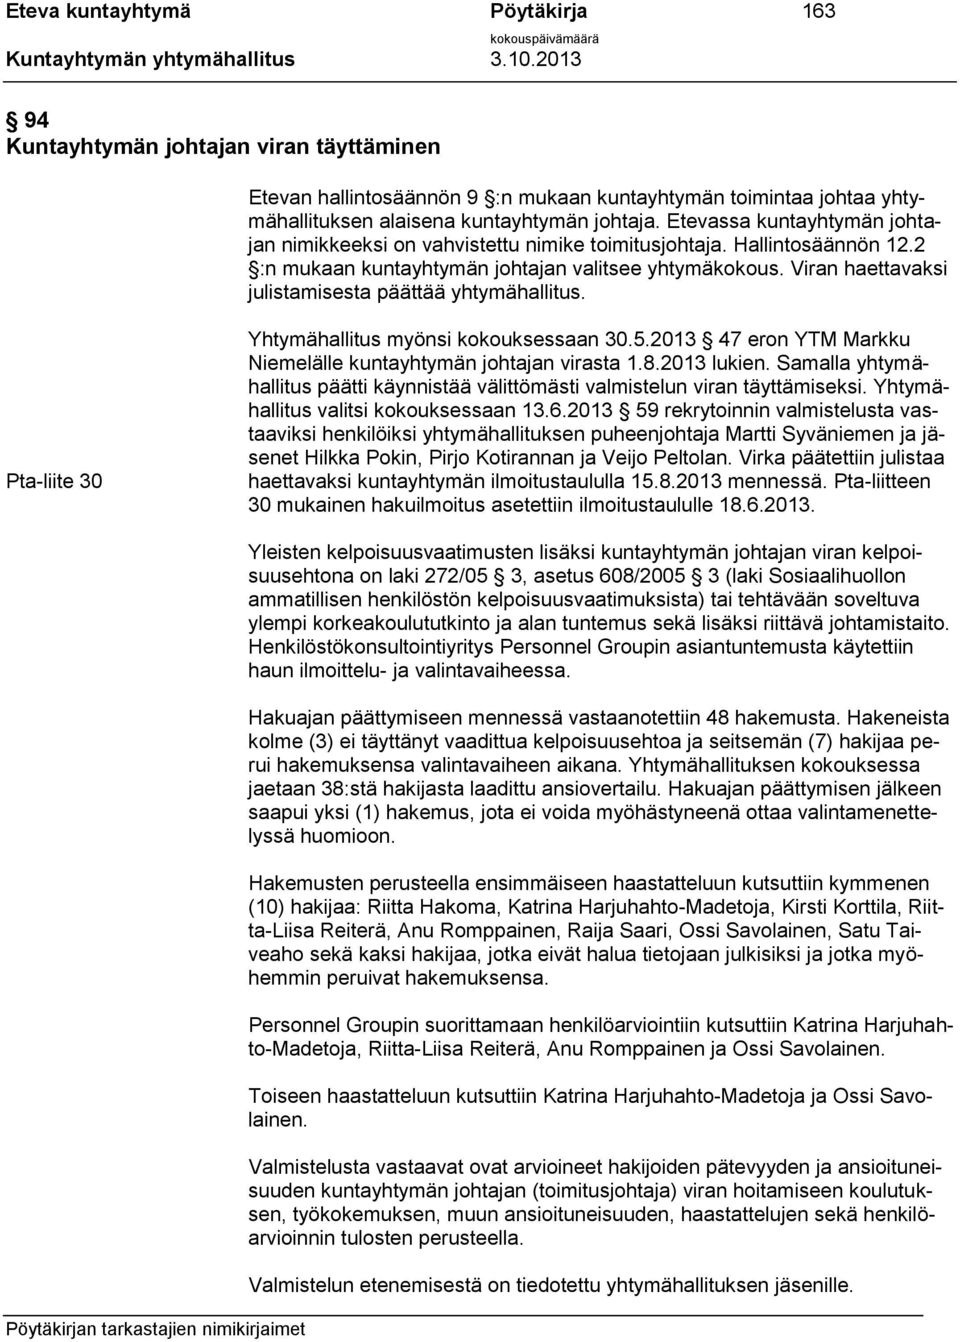 Viran haettavaksi julistamisesta päättää yhtymähallitus. Pta-liite 30 Yhtymähallitus myönsi kokouksessaan 30.5.2013 47 eron YTM Markku Niemelälle kuntayhtymän johtajan virasta 1.8.2013 lukien.